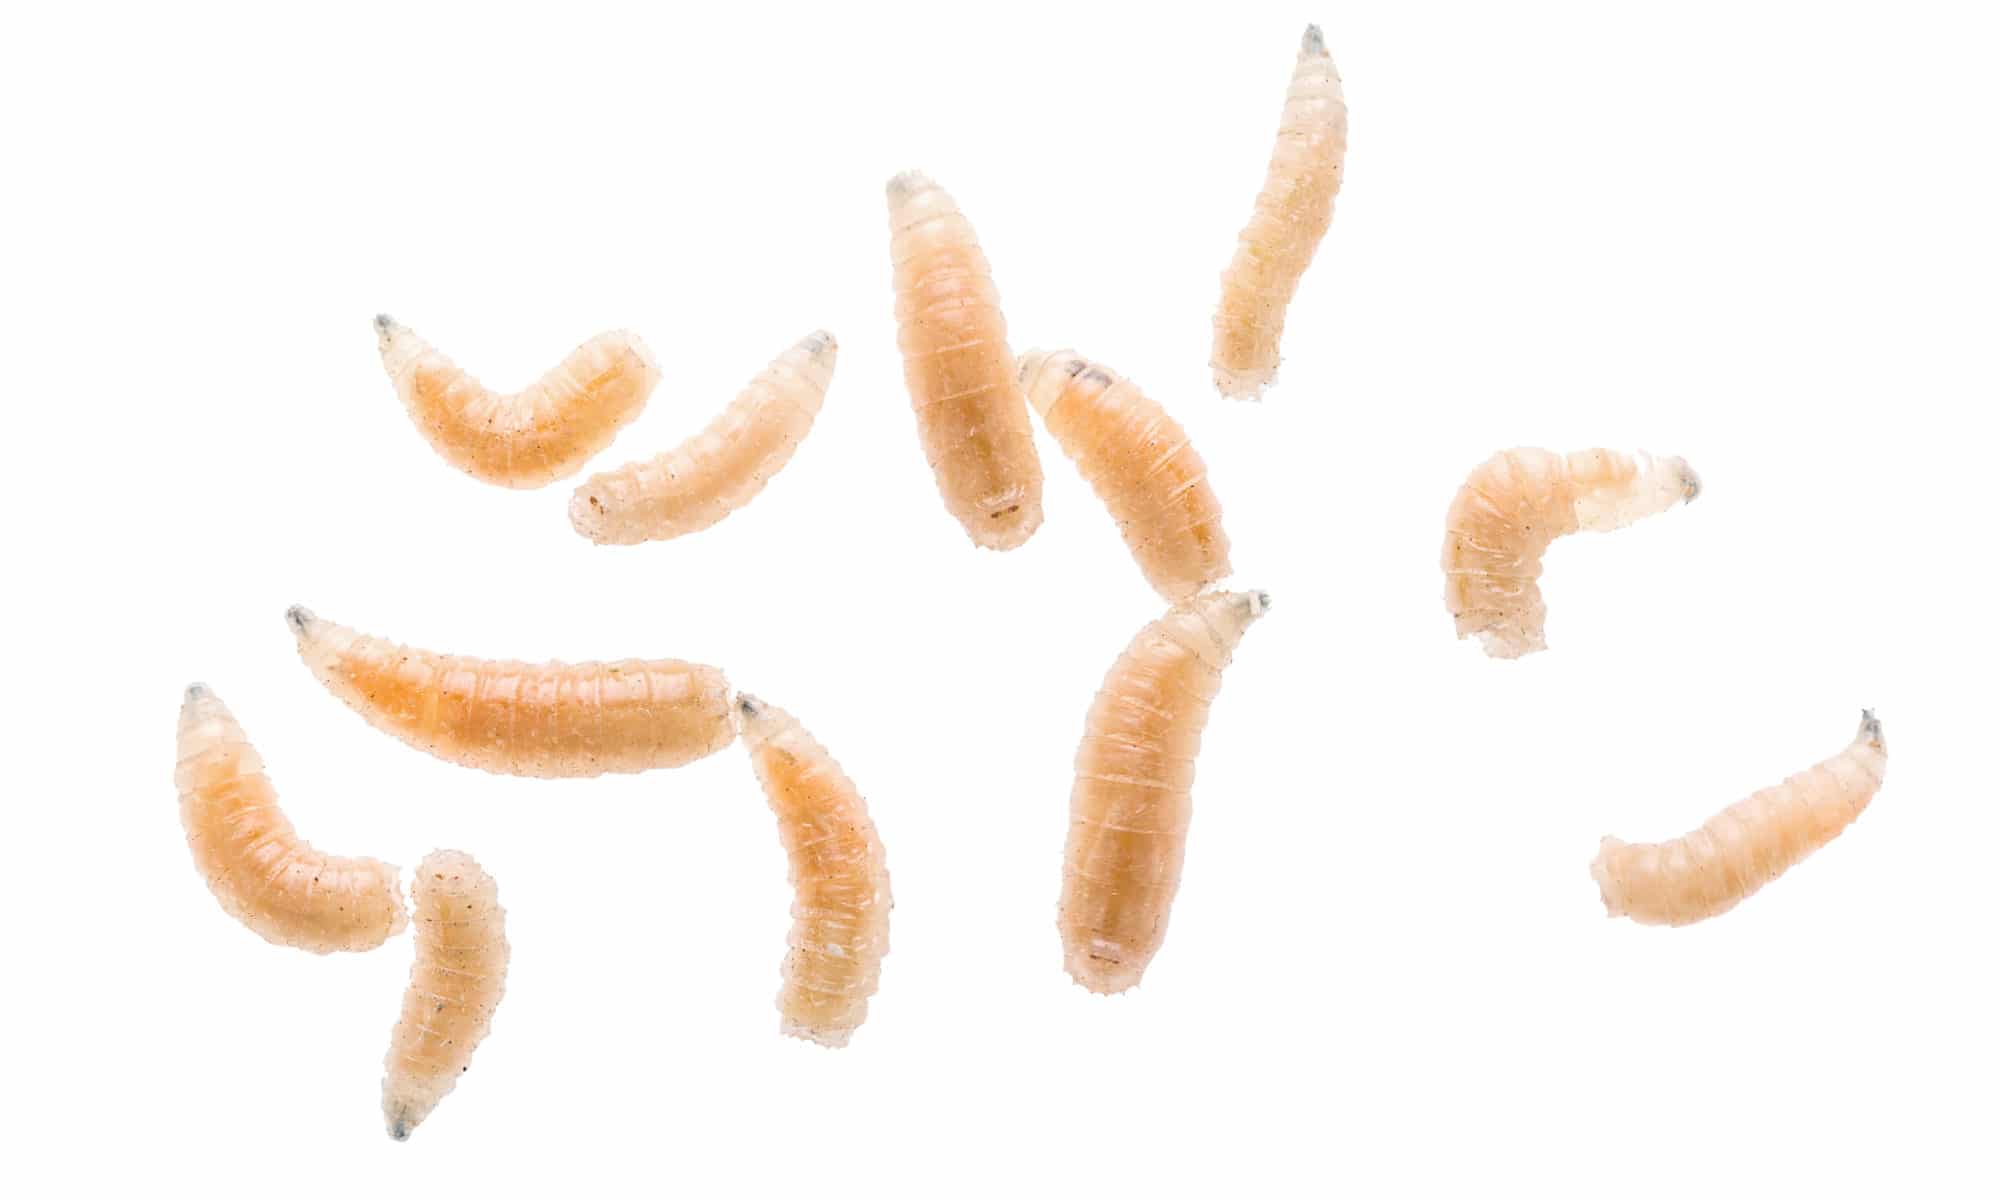 Maggot fly larva